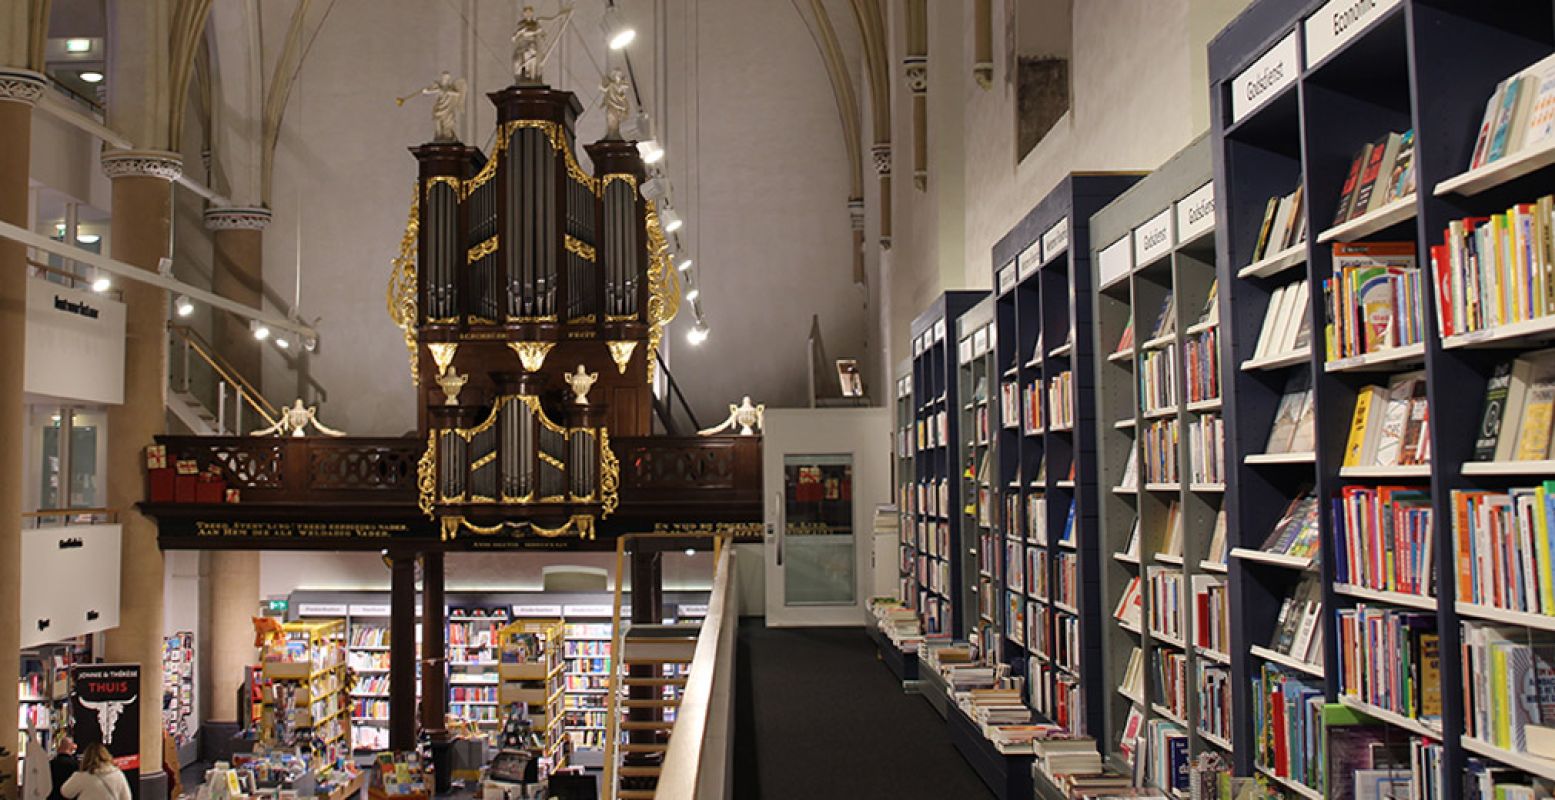 Rijksmonument, historische kerk, boekenwinkel, brasserie: Van der Velde In de Broeren is een veelzijdige hotspot in Zwolle. Foto: DagjeWeg.NL.